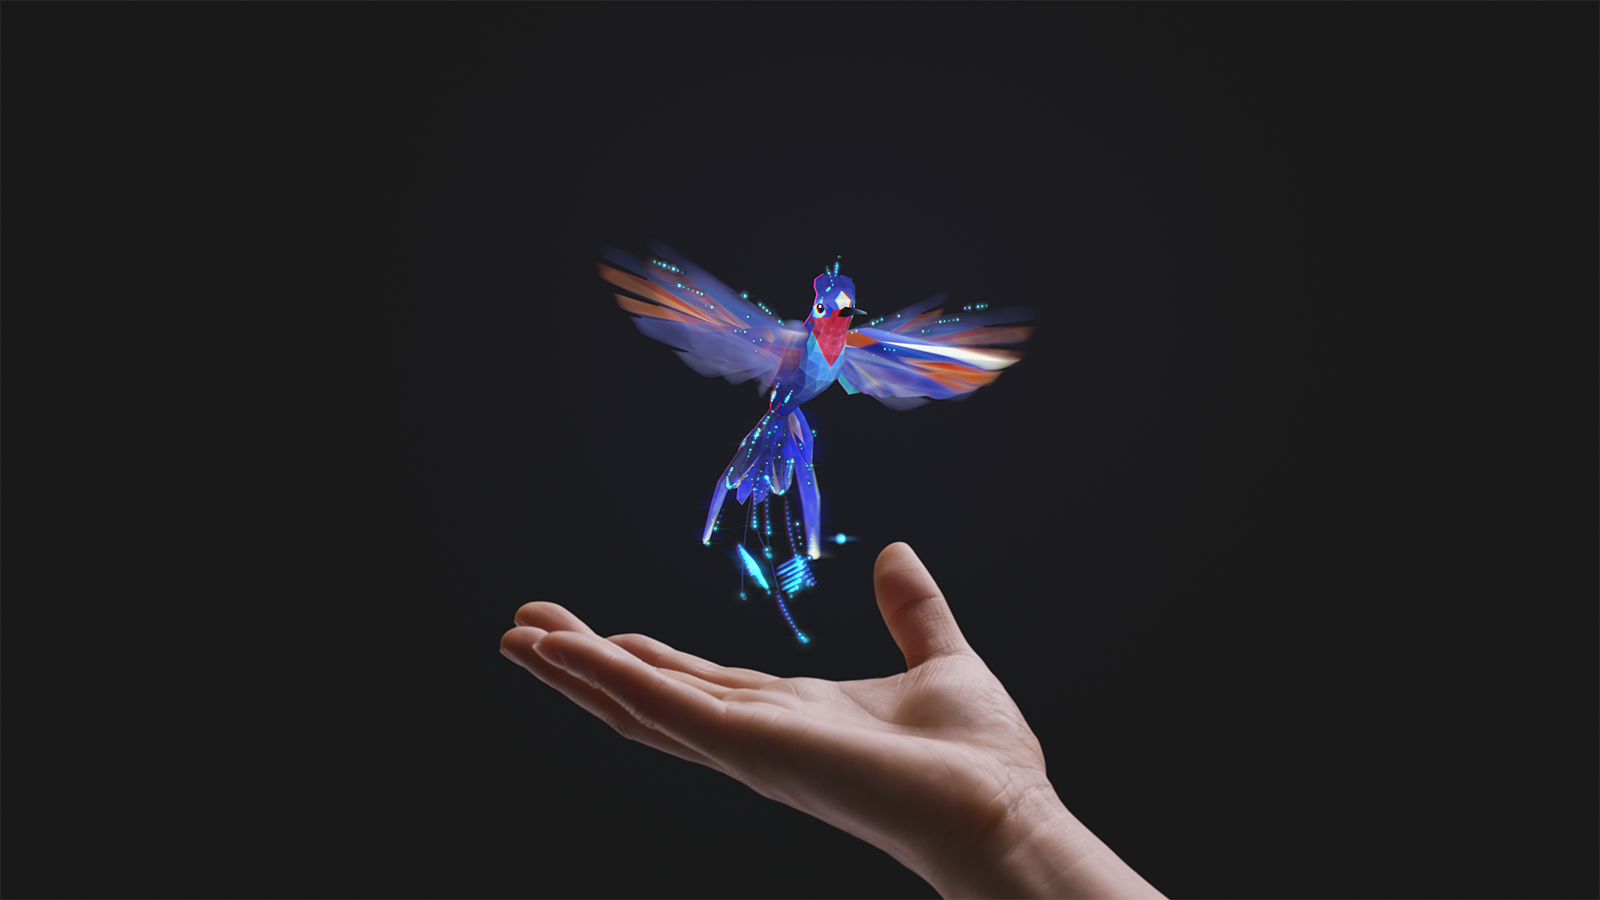 Wirtualny kolibr z ludzką ręką